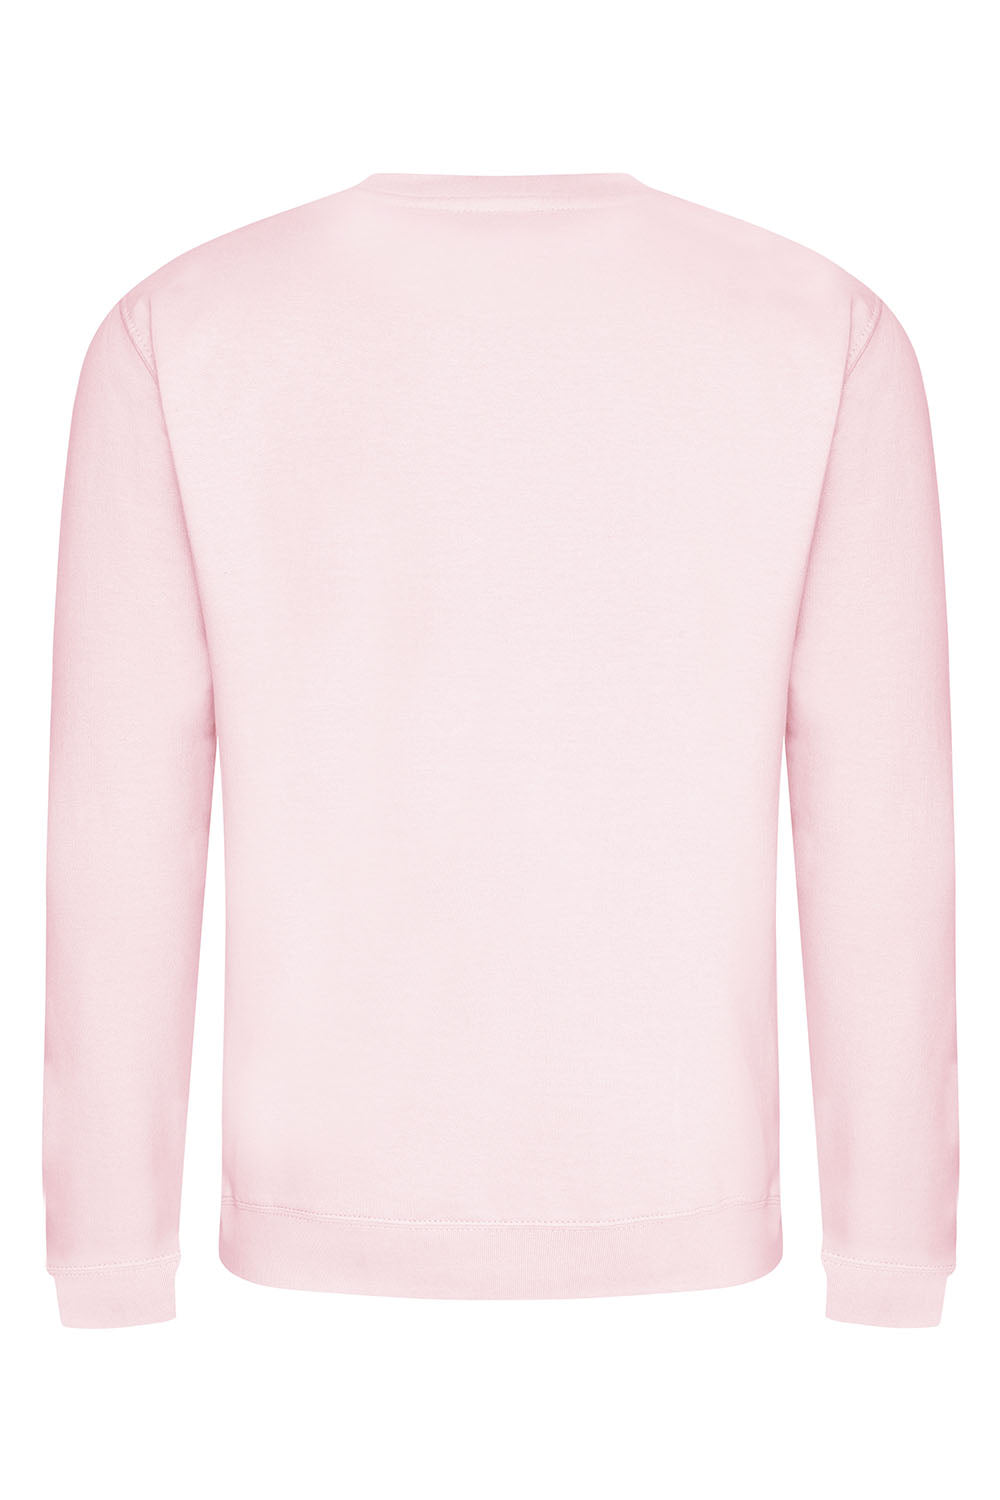 Happy Soul Sweatshirt In Baby Pink (Custom Pack)